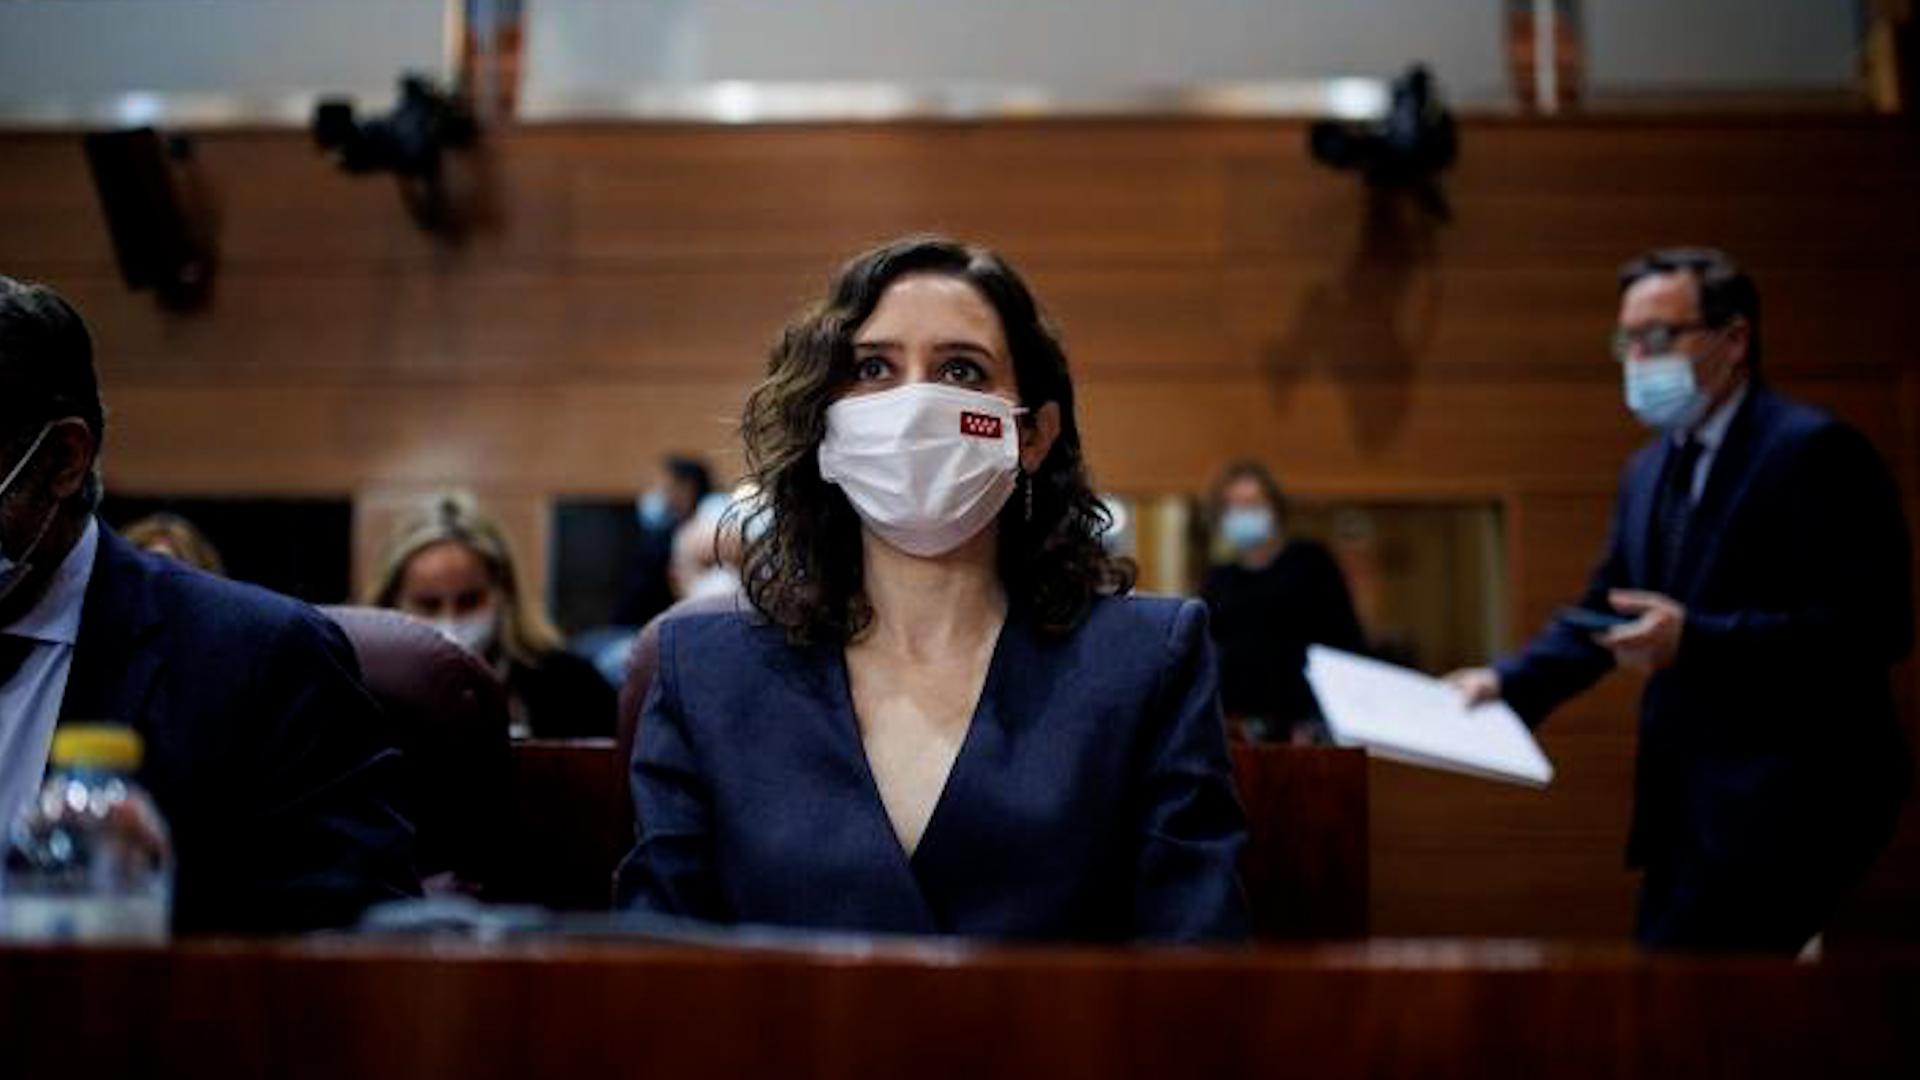 La presidenta de la Comunidad de Madrid, Isabel Díaz Ayuso, en una imagen de archivo. Fuente: Europa Press.